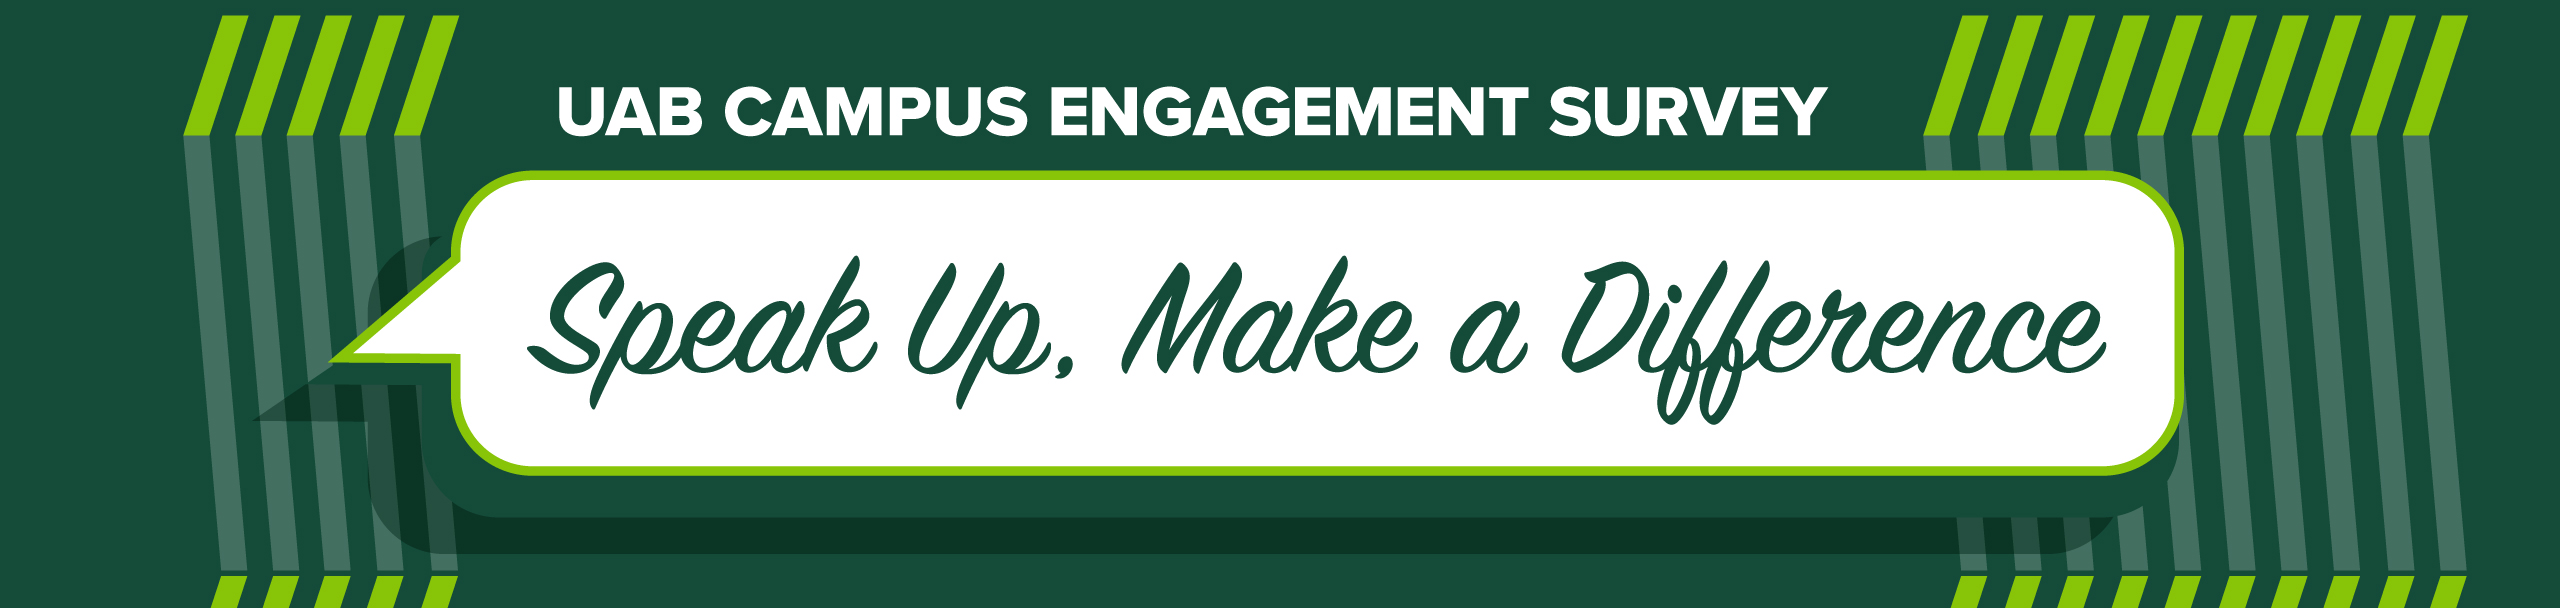 2017 campus engagement survey banner